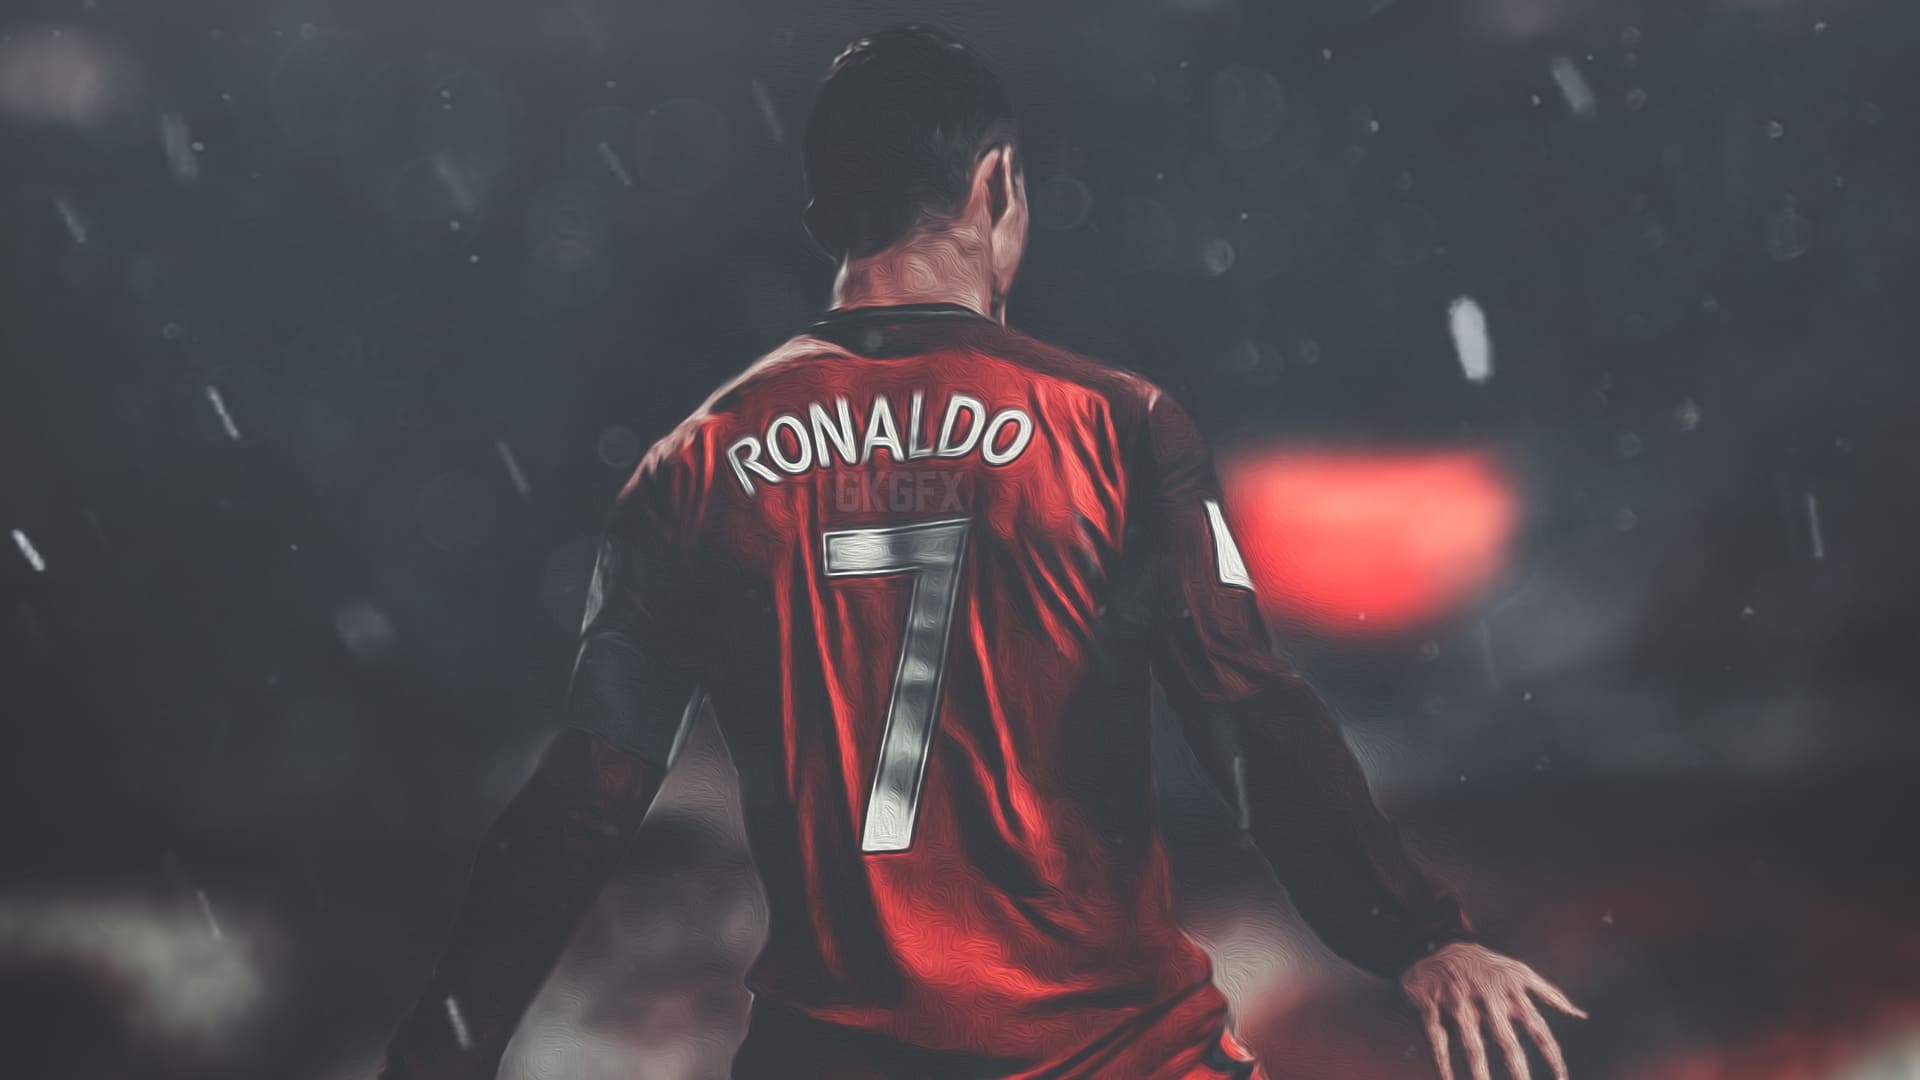 Ronaldo wallpaper hd for mobile - Soccer